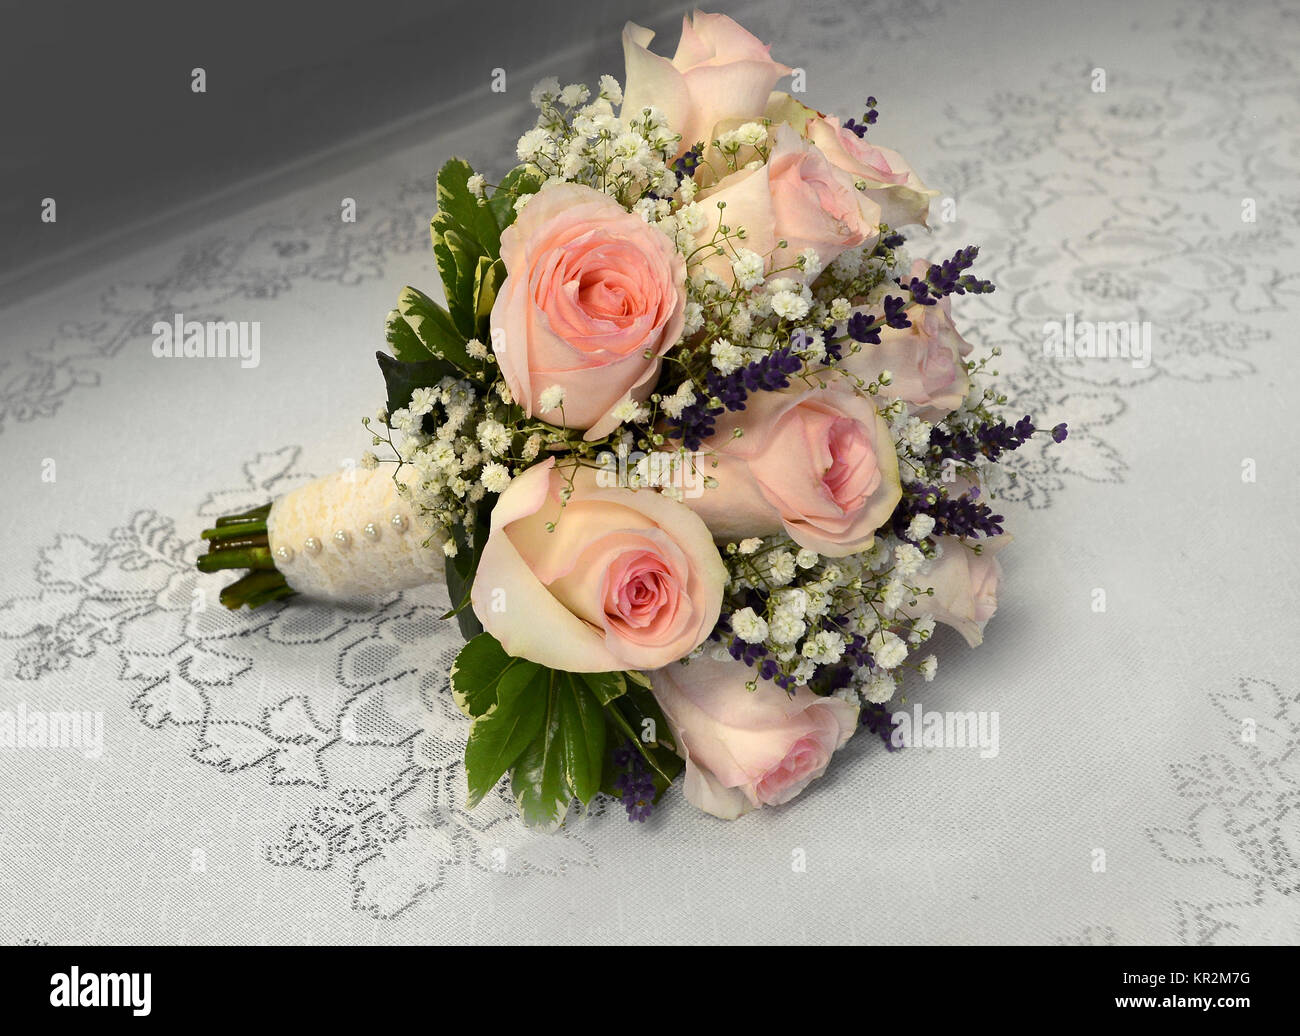 Foto von einem kleinen, romantischen nosegay Brautstrauß mit rosa Rosen, Atem, Zweige Lavendel, Spitze und Perlen. Perfekt für ein Vintage Hochzeit! Stockfoto